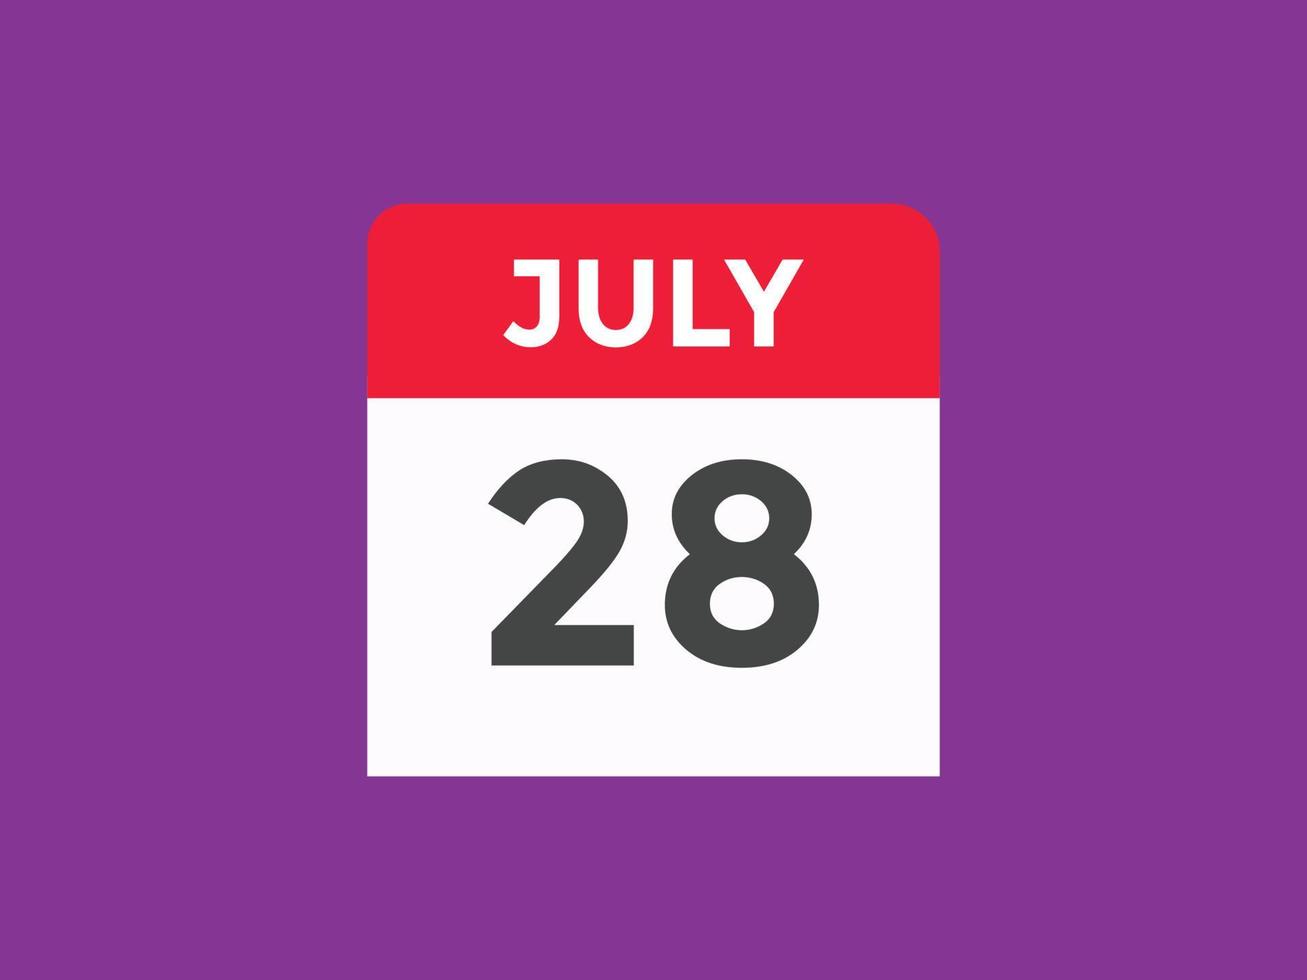 lembrete de calendário de 28 de julho. 28 de julho modelo de ícone de calendário diário. modelo de design de ícone de calendário 28 de julho. ilustração vetorial vetor